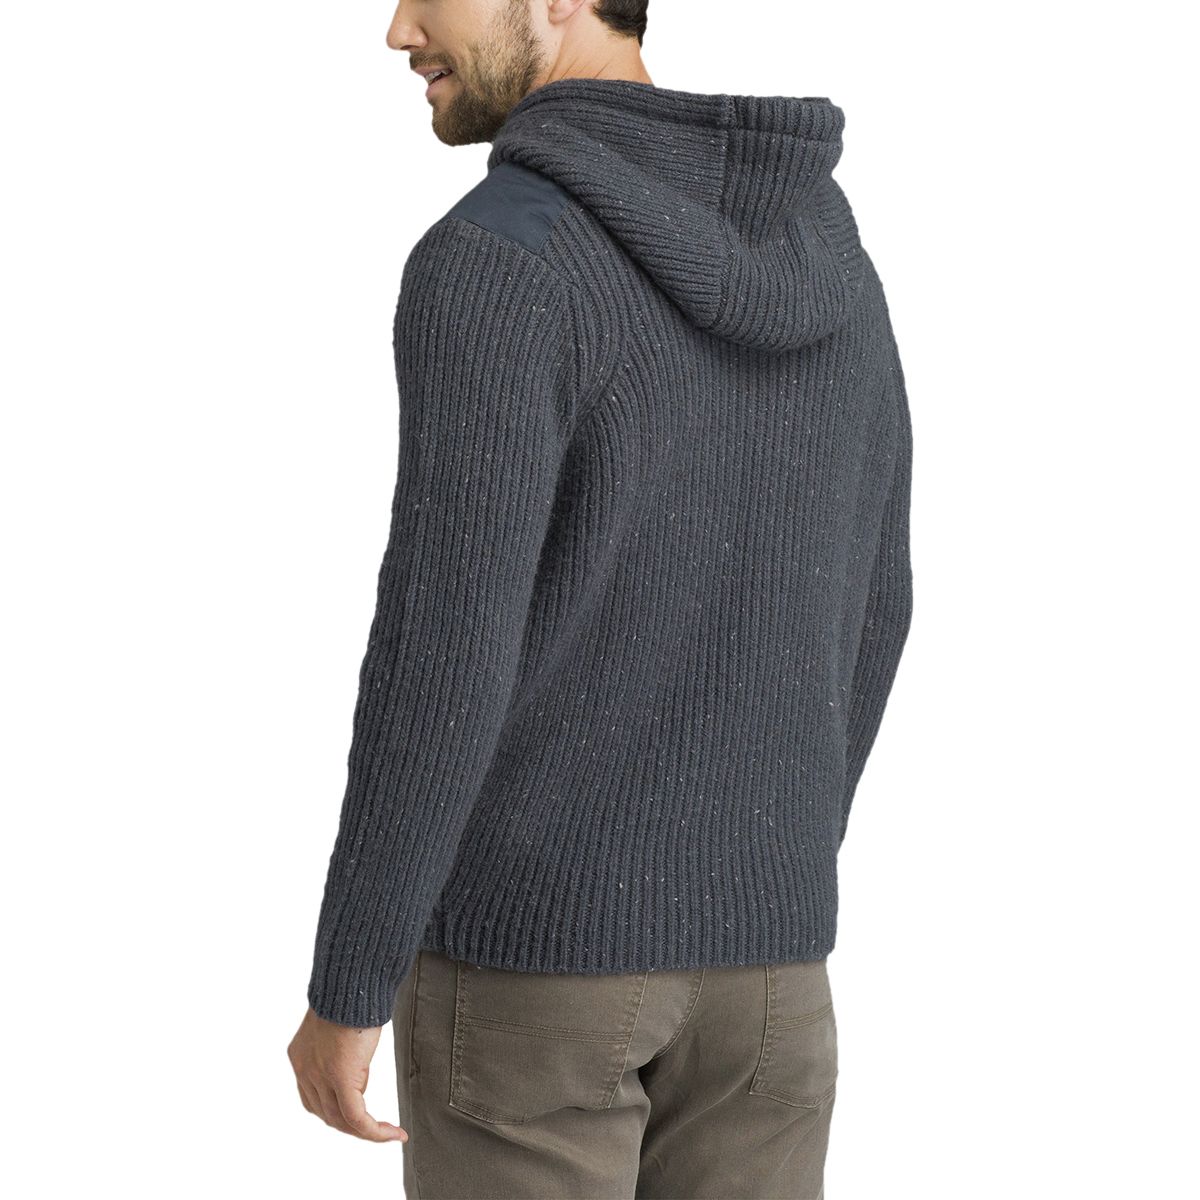 Prana Henley Hooded Sweater - Men's | Backcountry.com